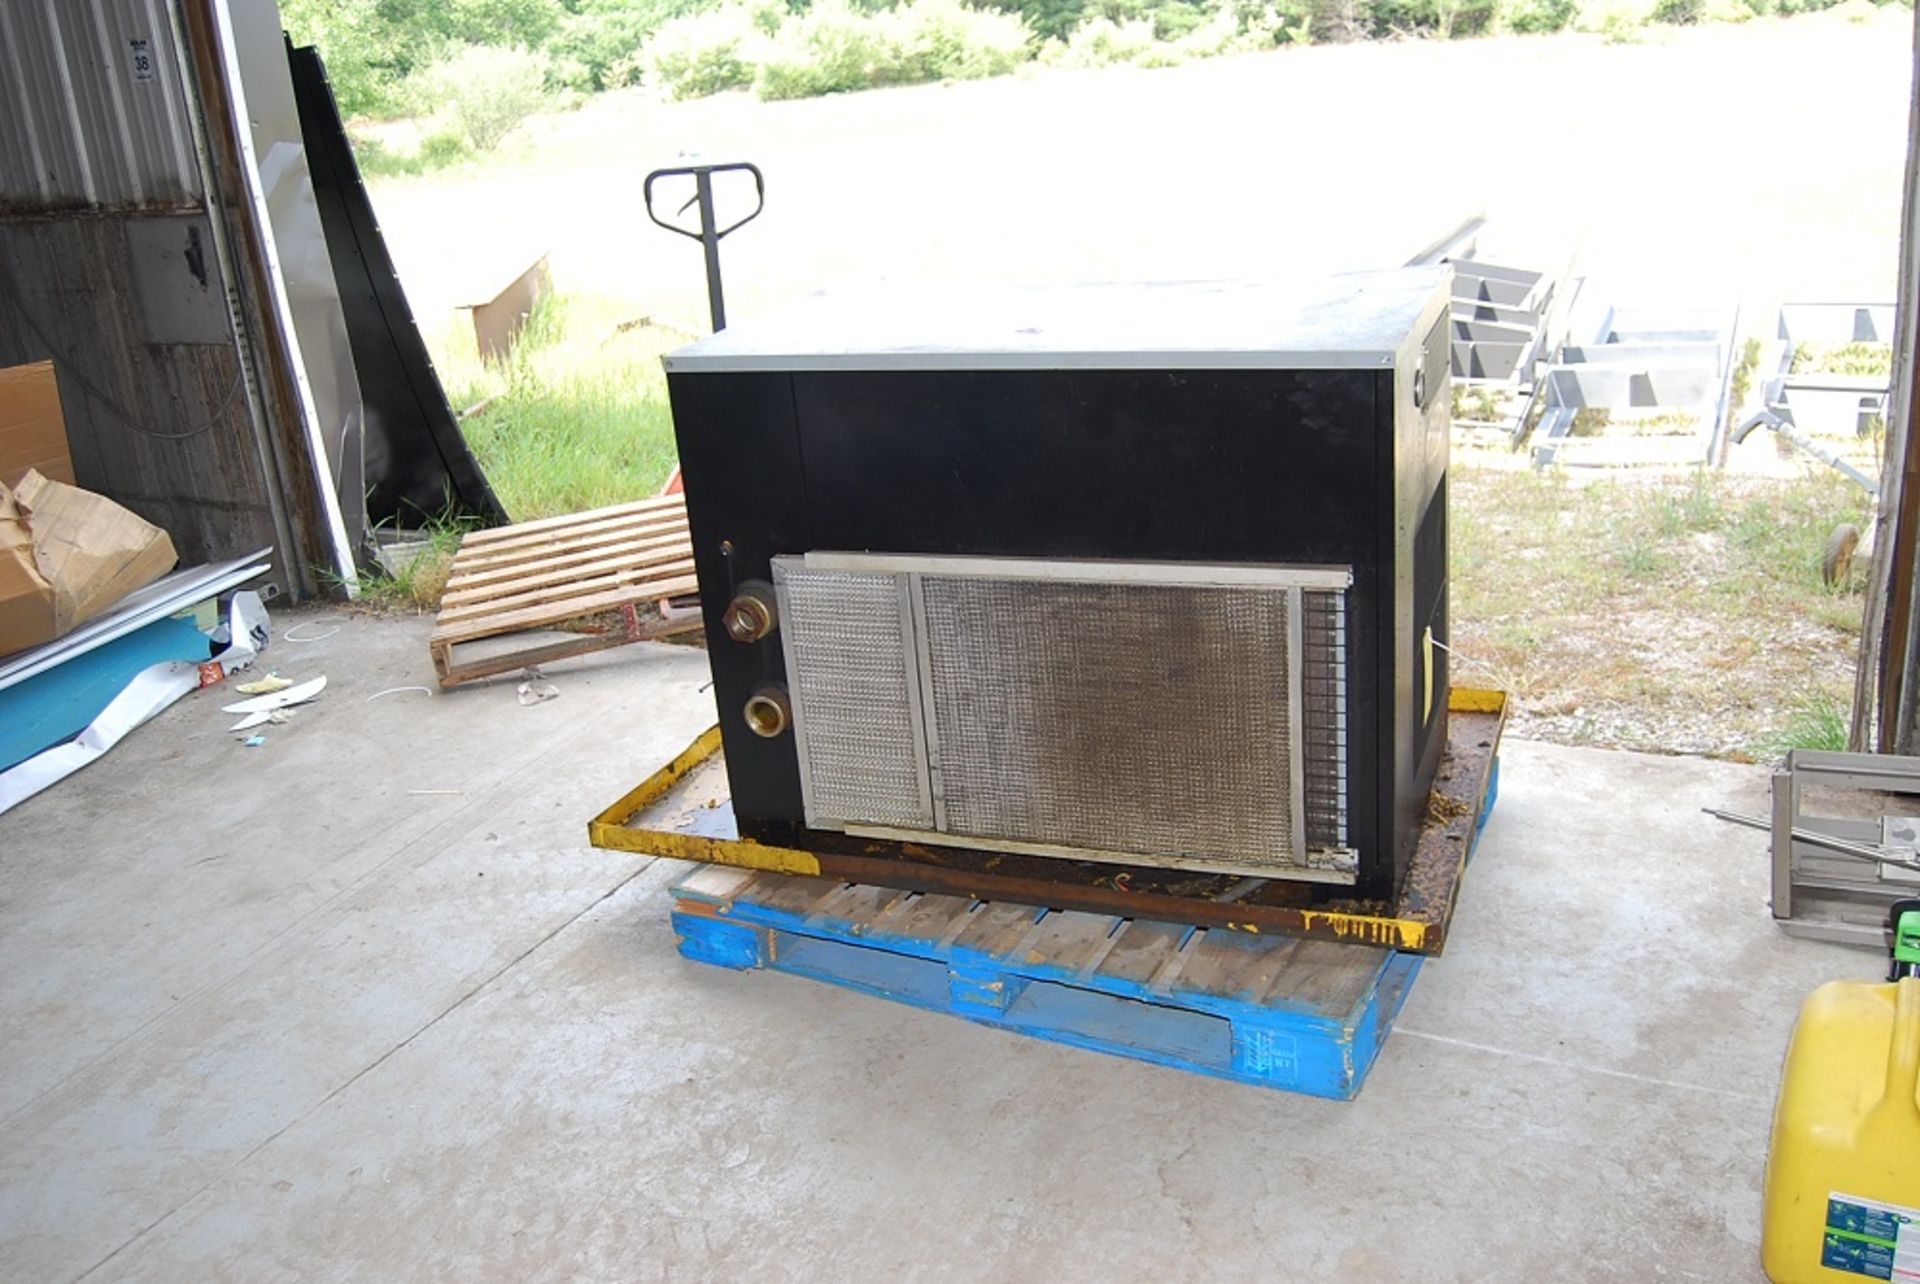 Airtek Air Dryer, Model: DA500-A4, SN: 080300118 460 volts 3 phase, Foot print: 46" x 28" x 36" tall - Image 3 of 7